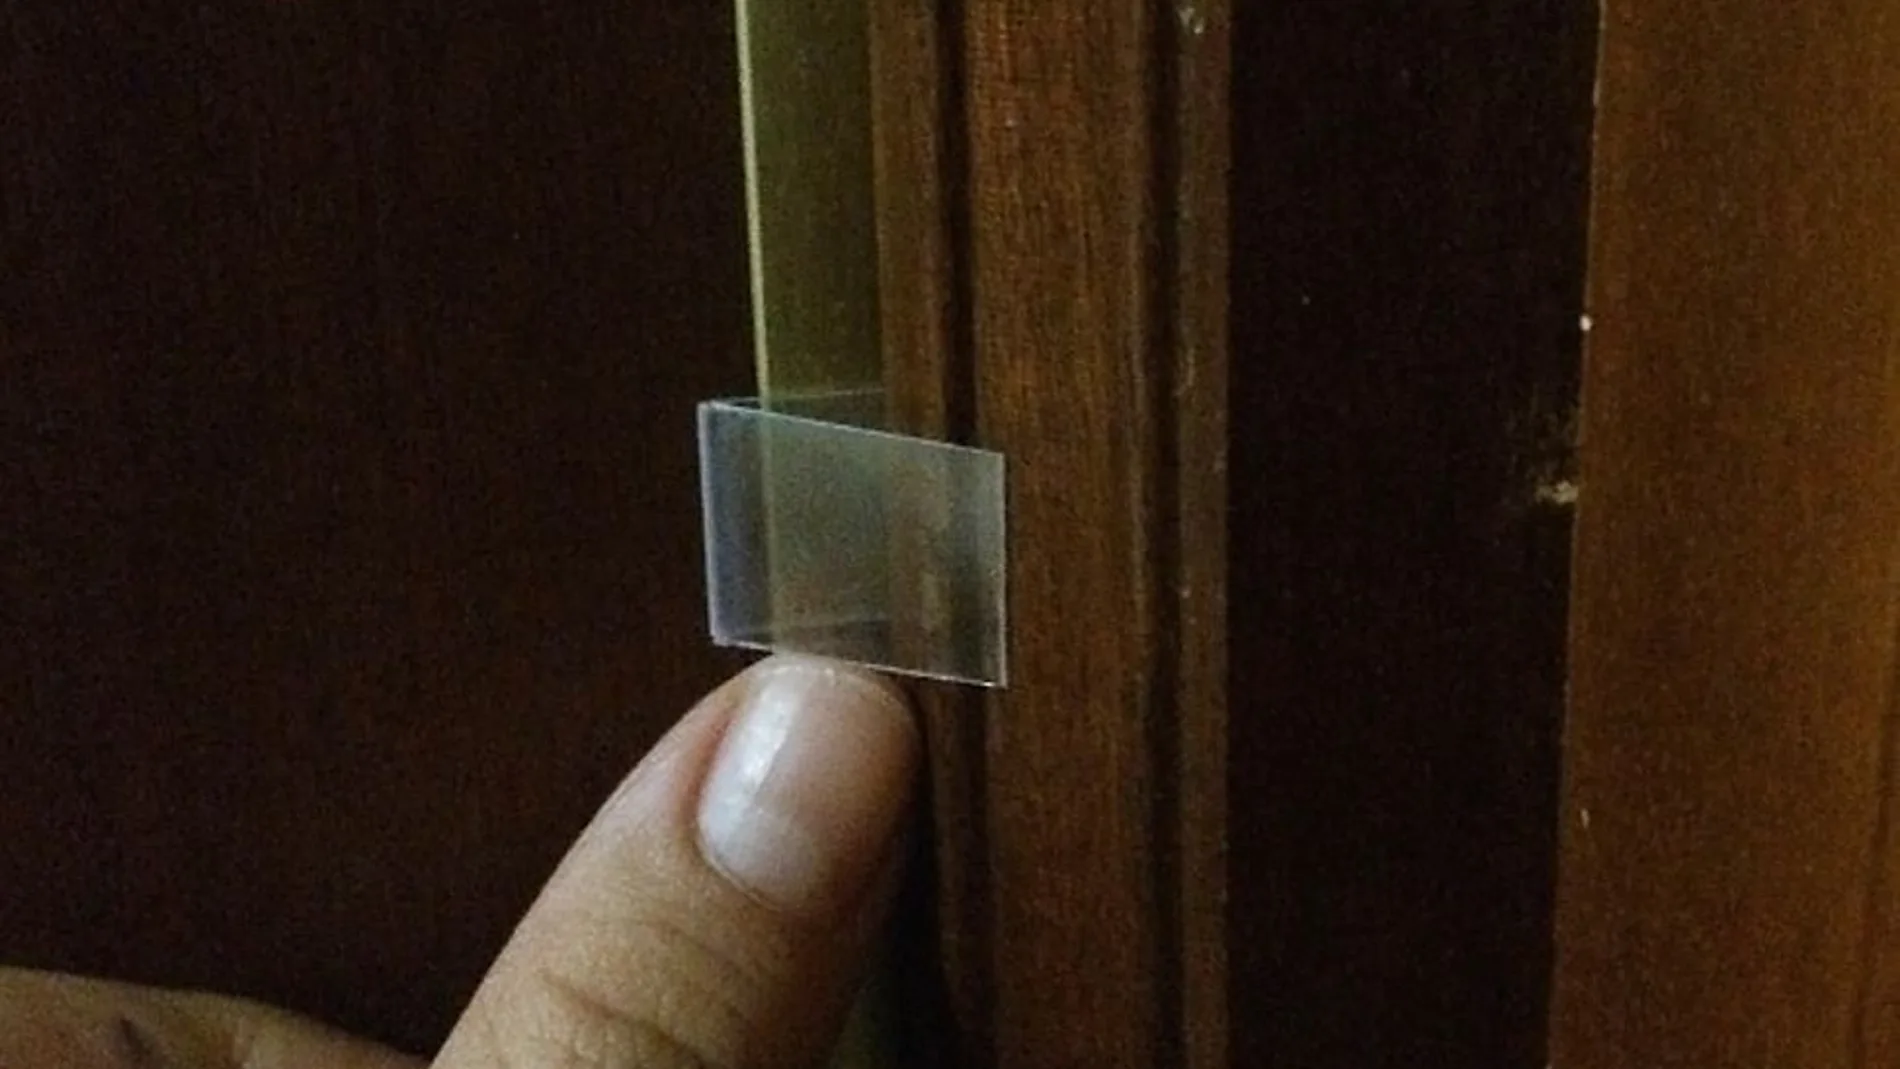 Las tiras de plástico transparente son unos marcadores muy eficaces para saber si hay alguien en la vivienda.